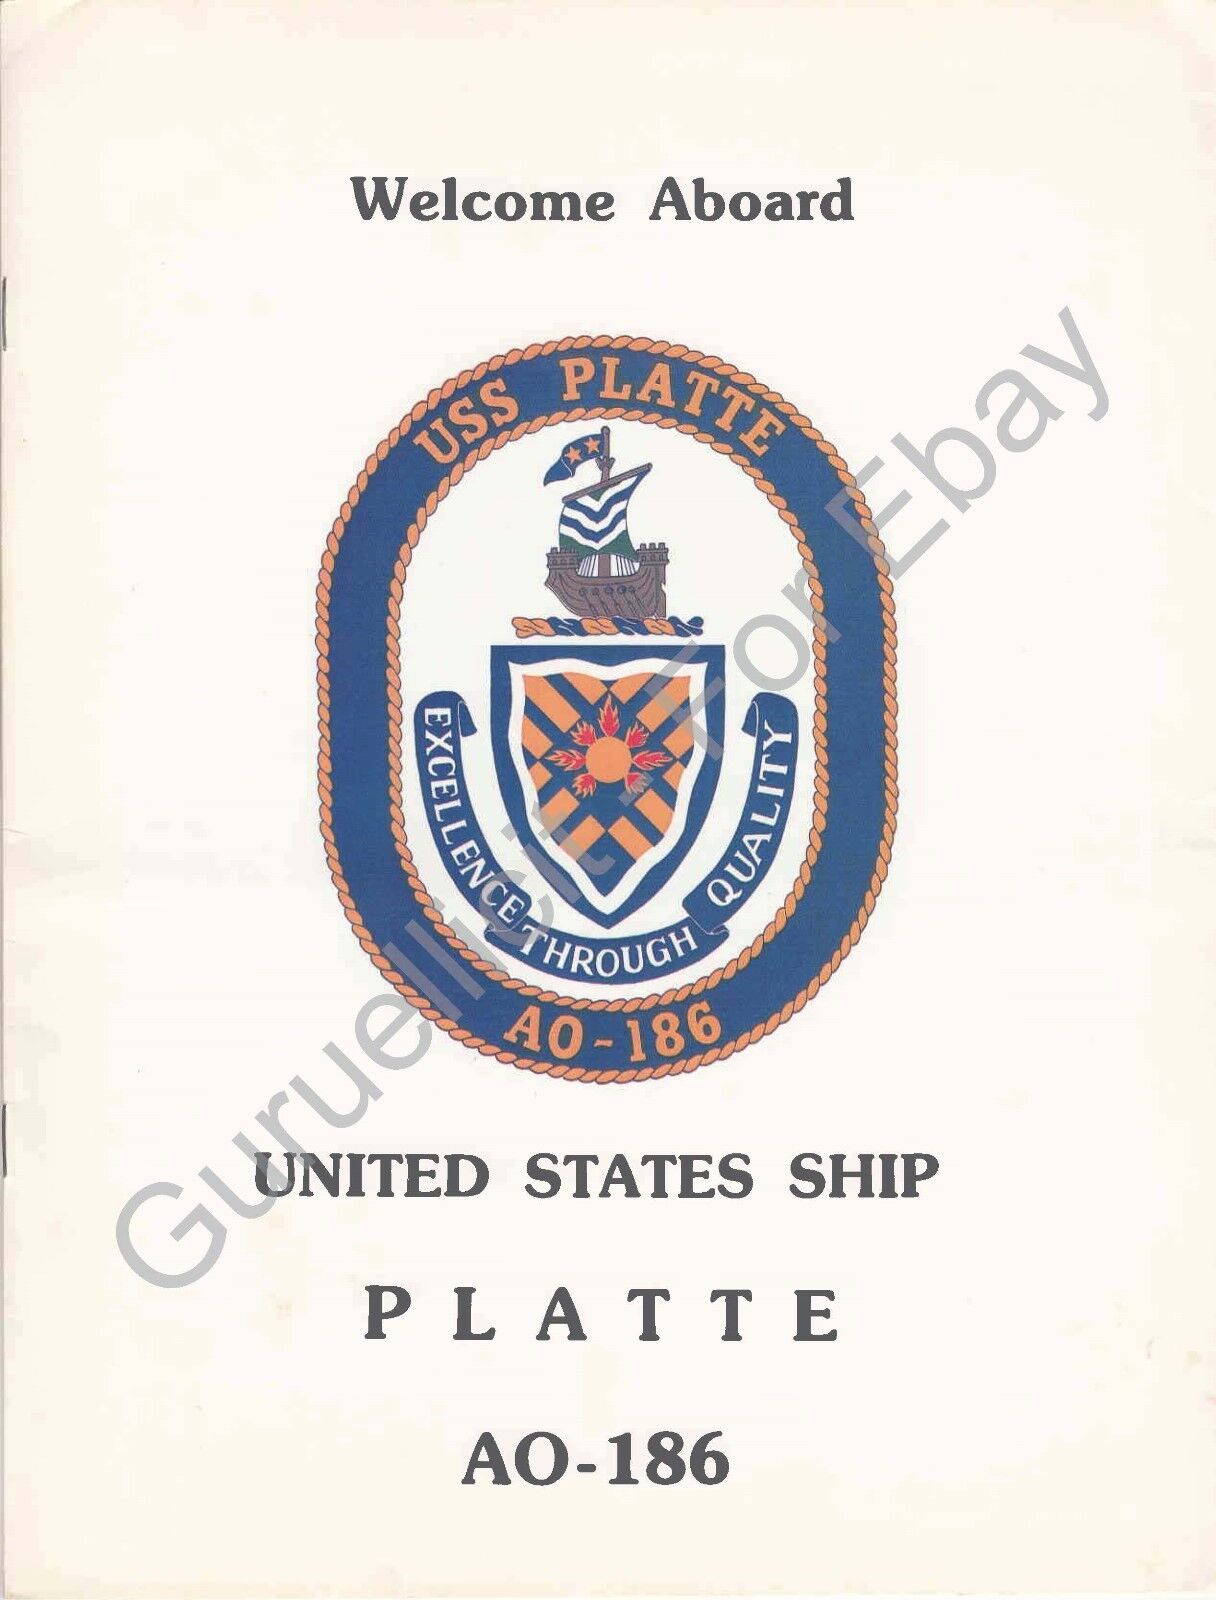 USS Platte (AO 186) - US Navy Welcome Aboard Program - 1983